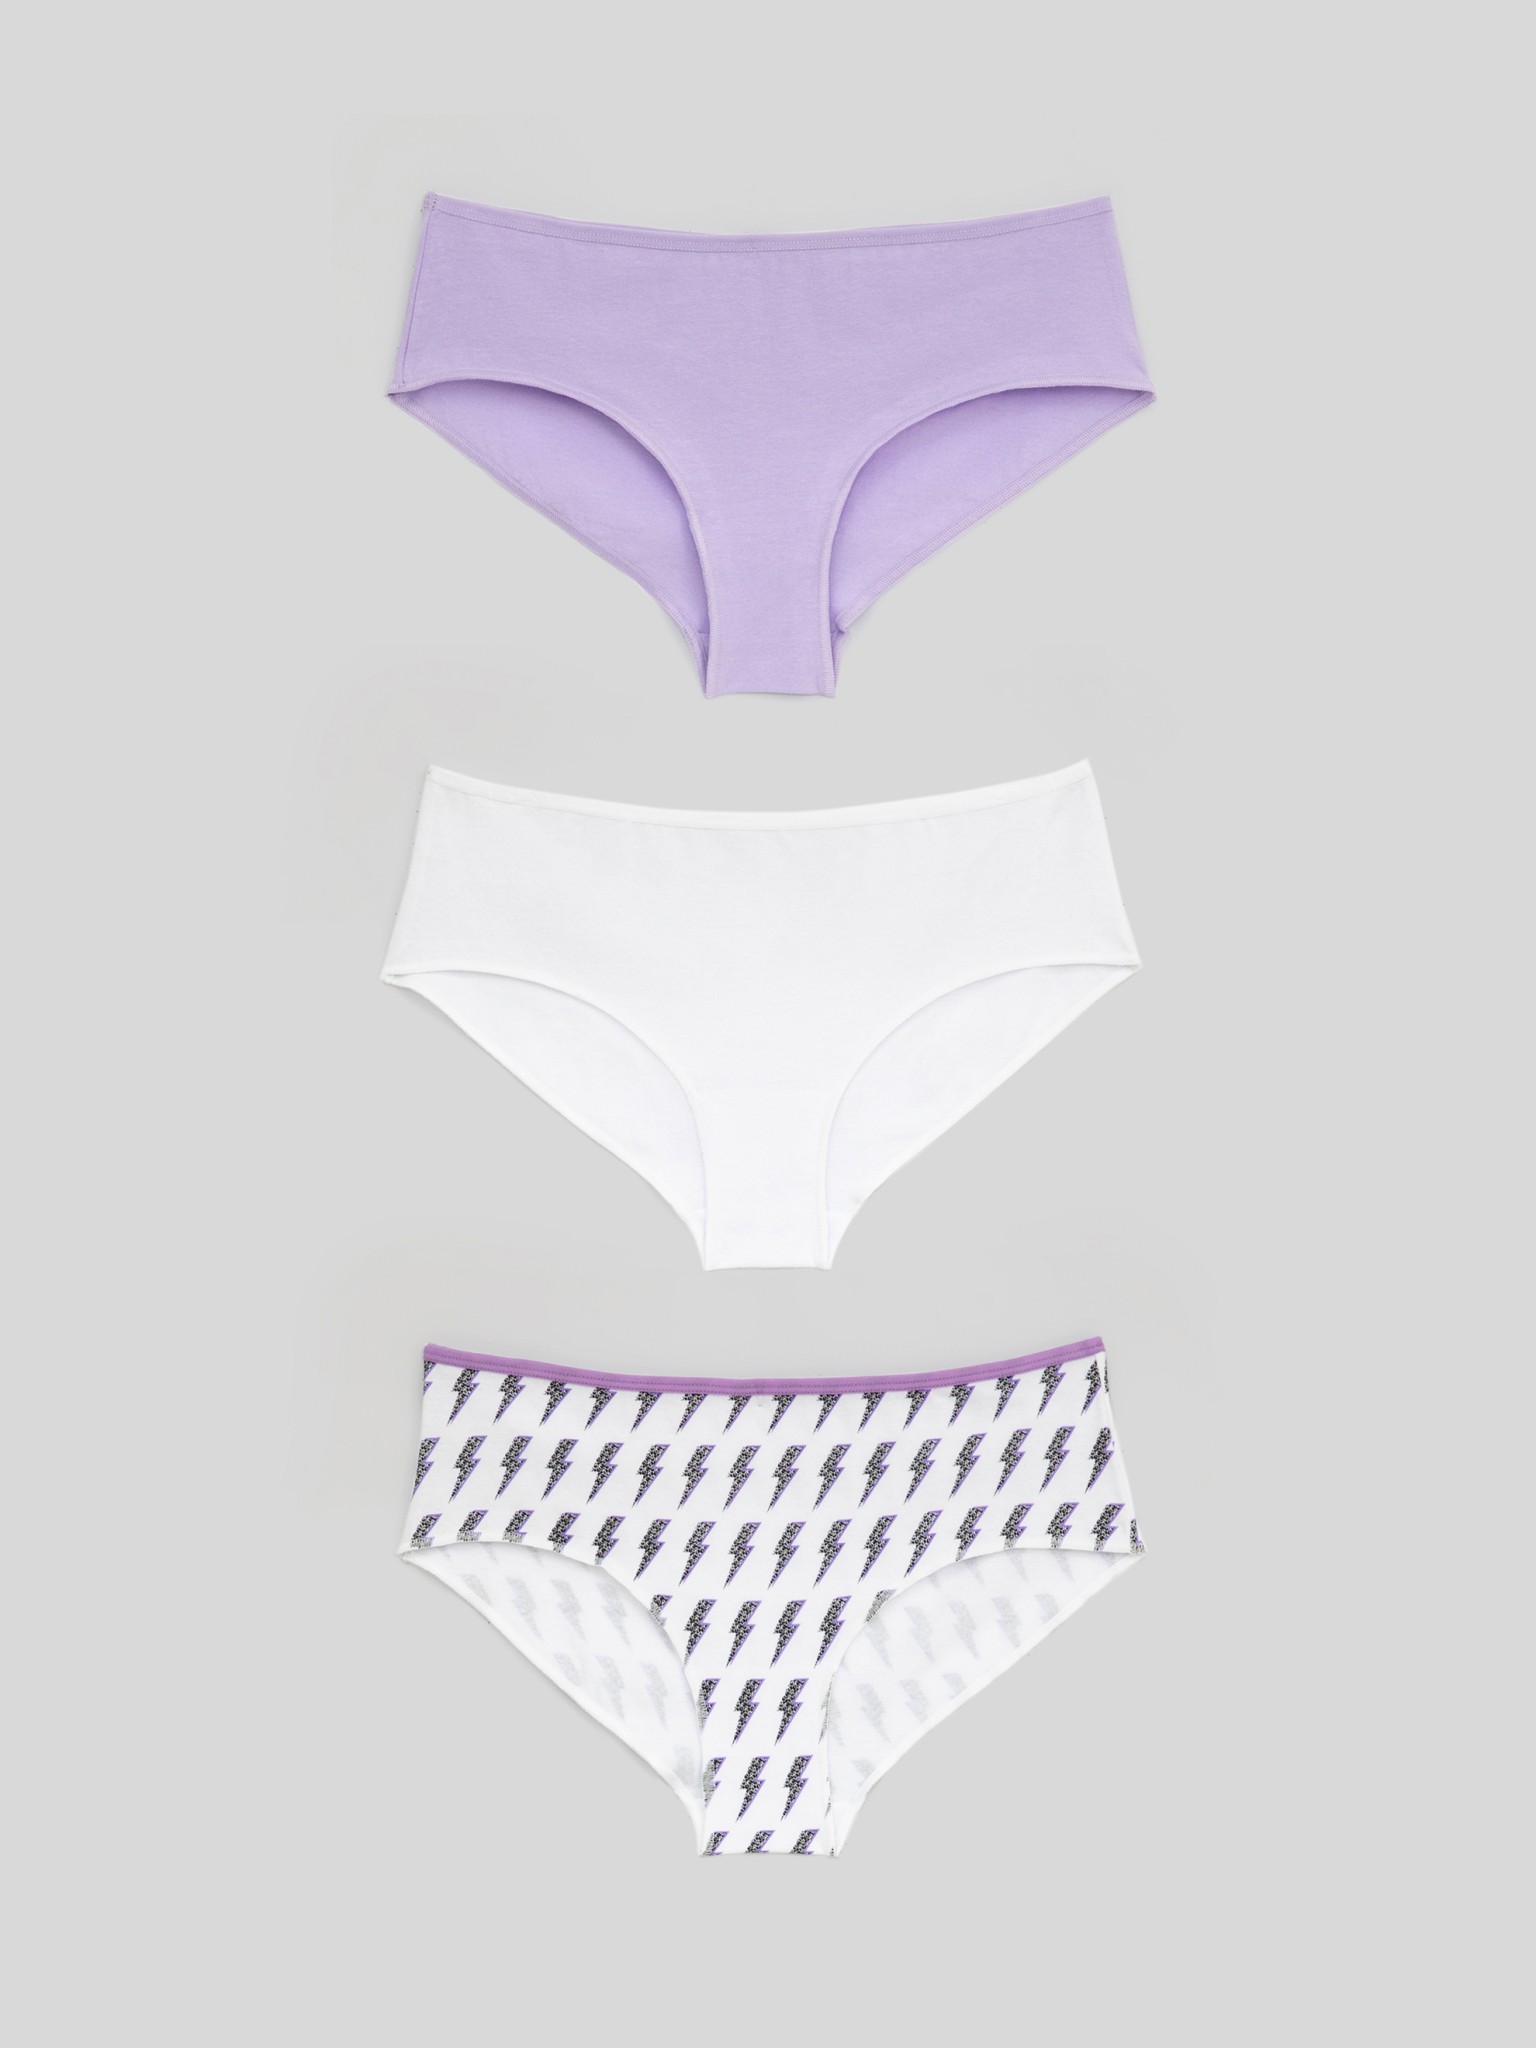 Комплект трусов женских Infinity Lingerie 31204122036 белый; фиолетовый L, 3 шт.